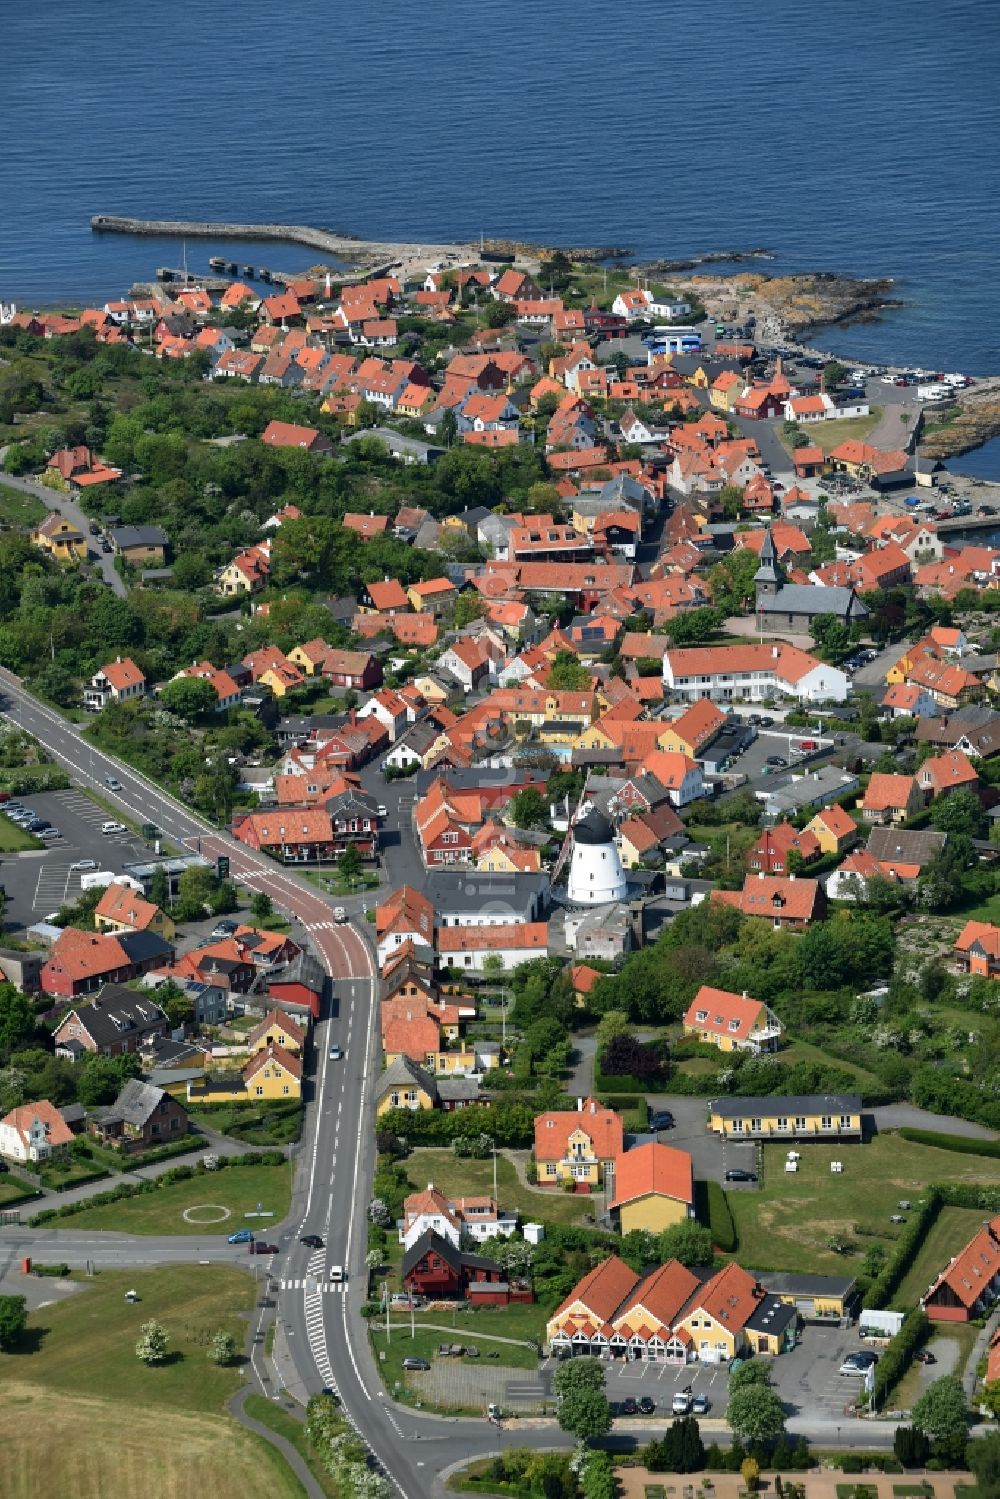 Gudhjem aus der Vogelperspektive: Stadtansicht vom Innenstadtbereich in Gudhjem in Region Hovedstaden, Dänemark